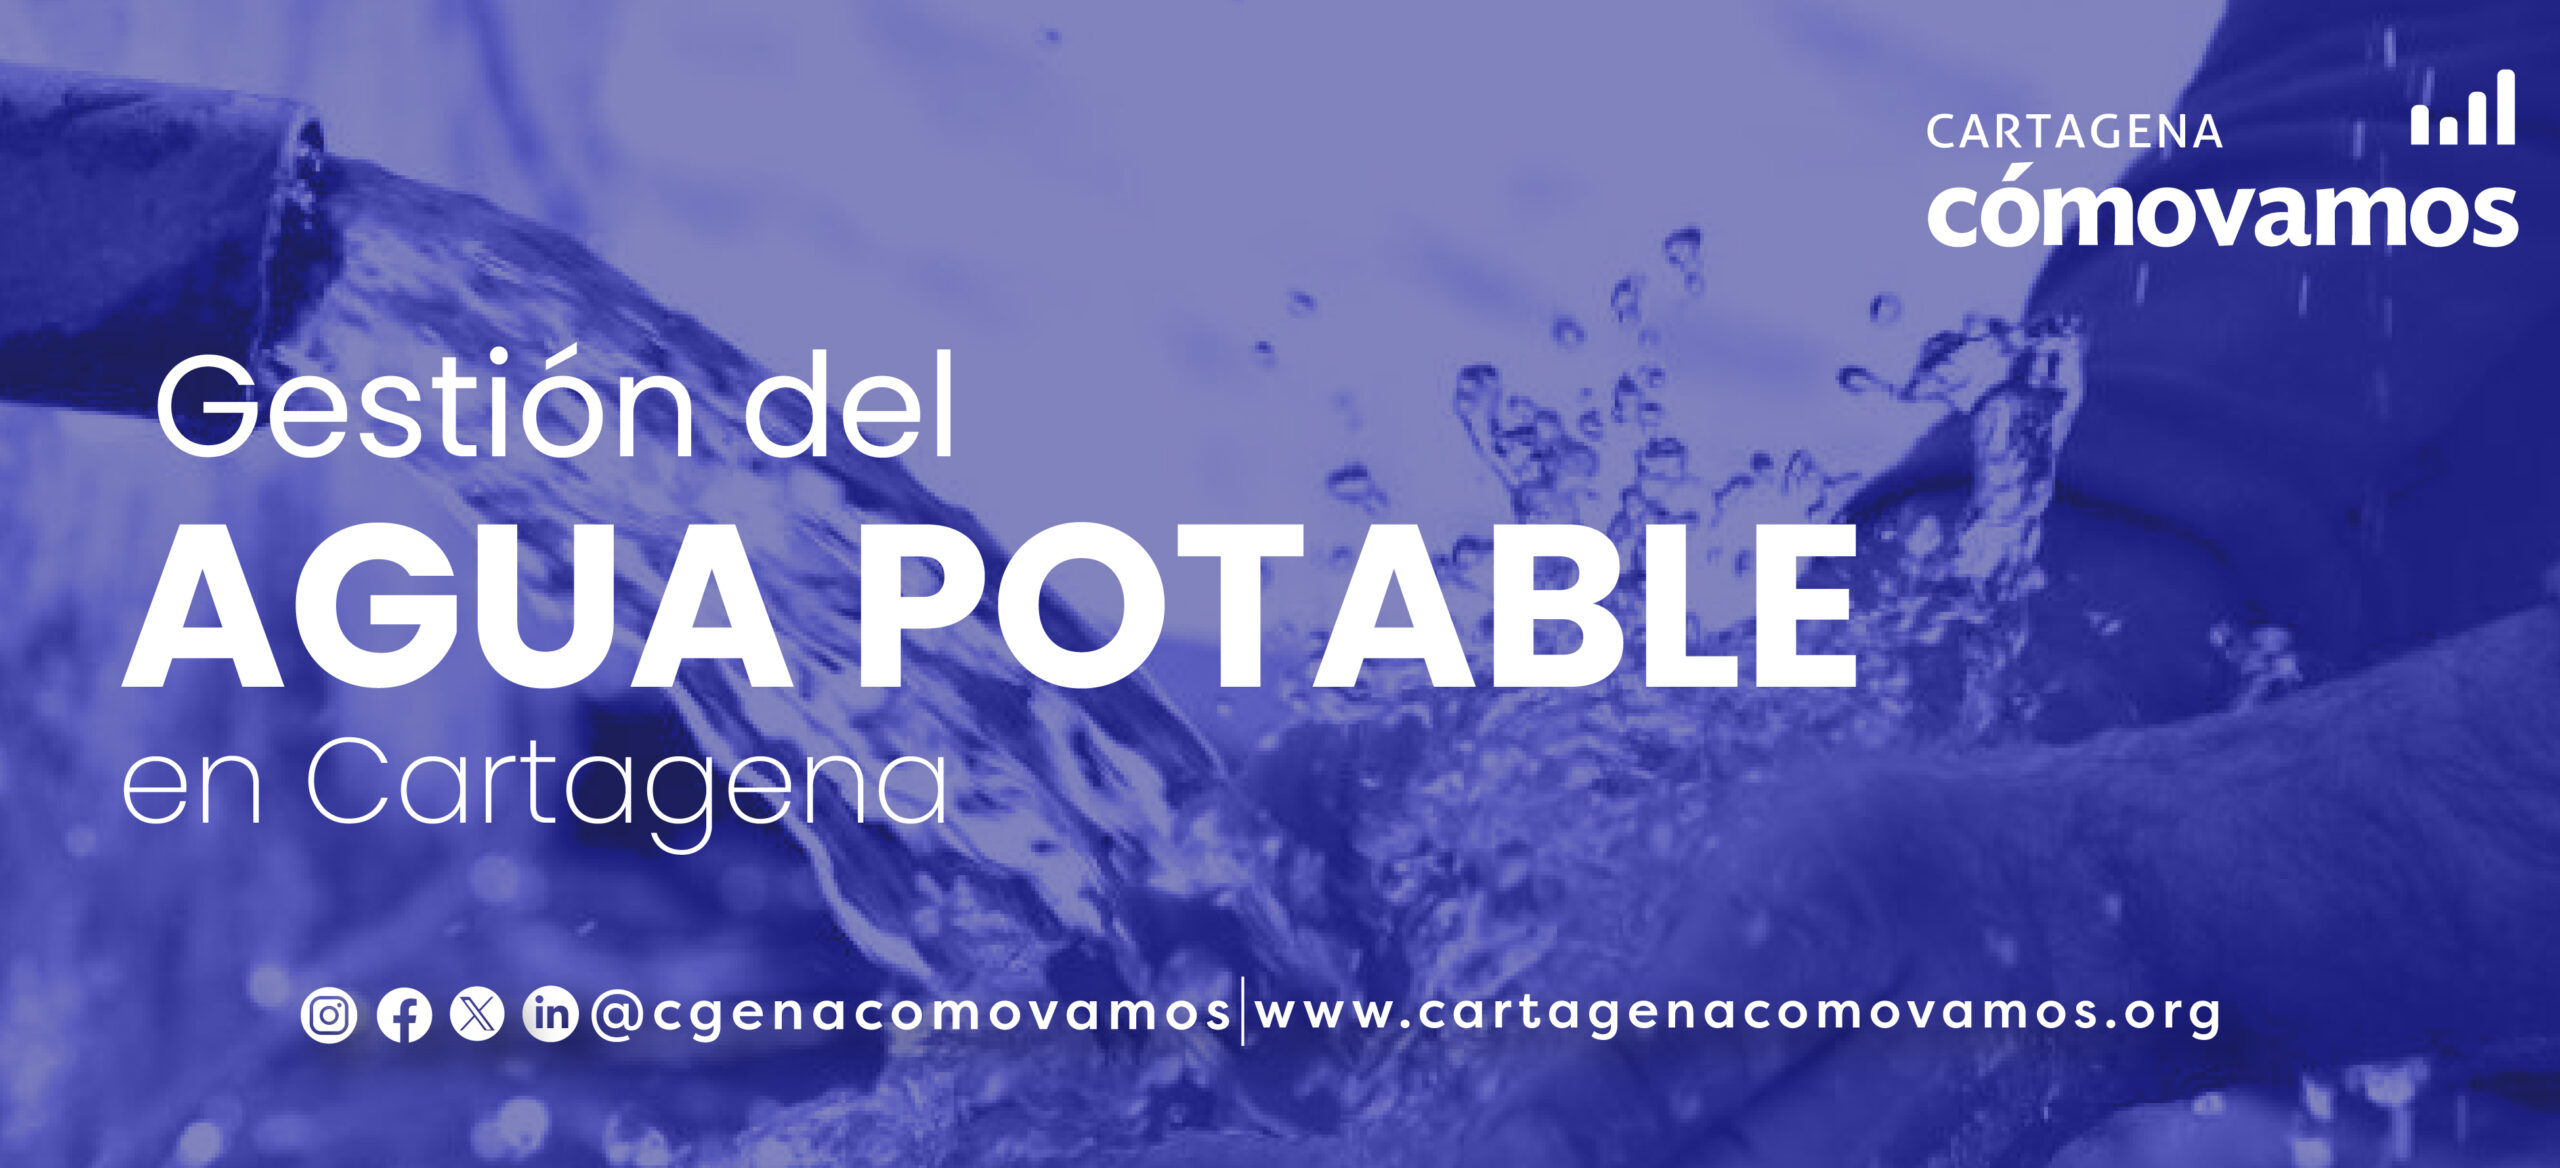 La gestión de agua potable en Cartagena